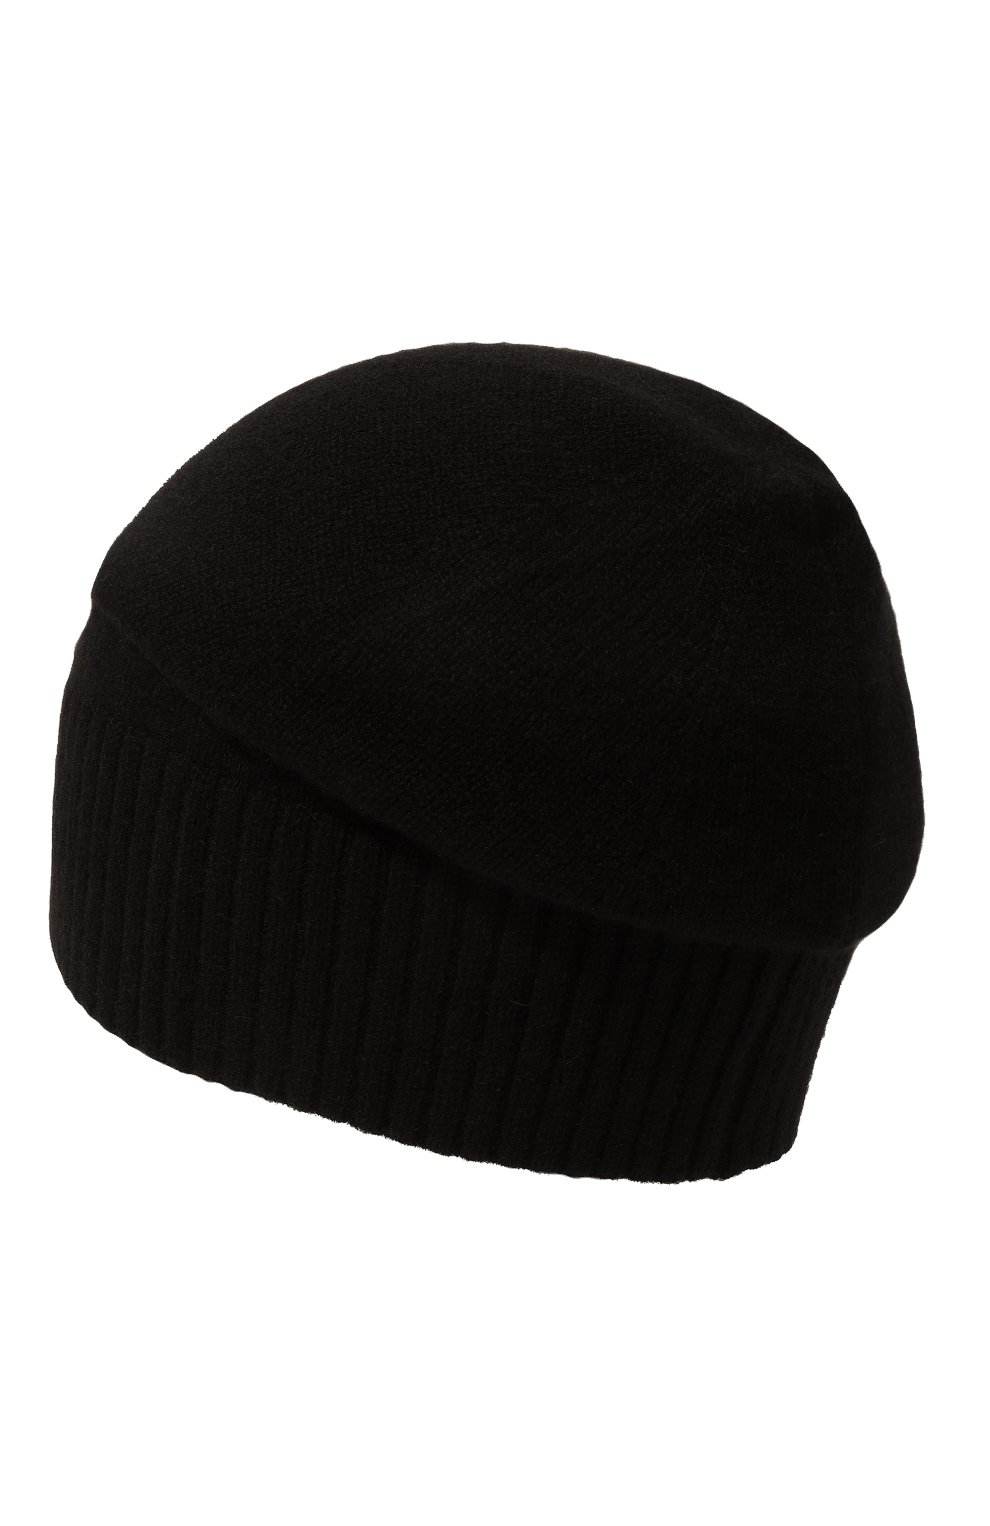 Мужская кашемировая шапка CANOE черного цвета, арт. 4912410 | Фото 3 (Материал: Текстиль, Кашемир, Шерсть; Кросс-КТ: Трикотаж)